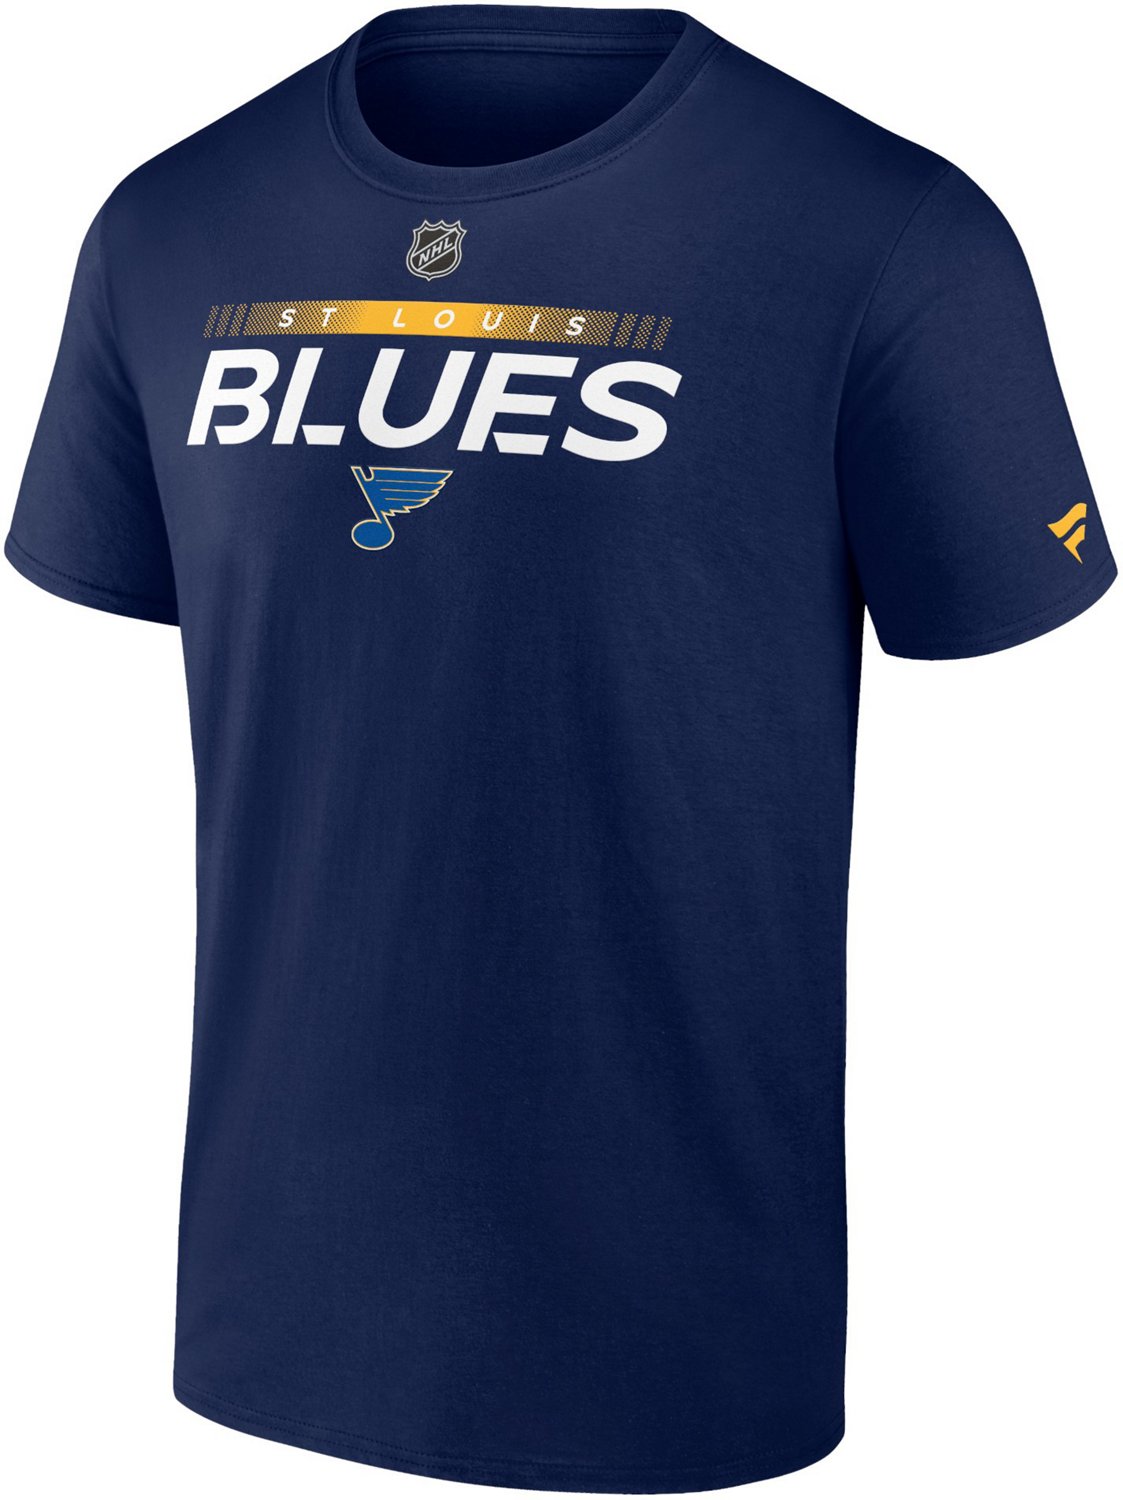 St. Louis Blues Gear, Blues Jerseys, Store, St Louis Pro Shop